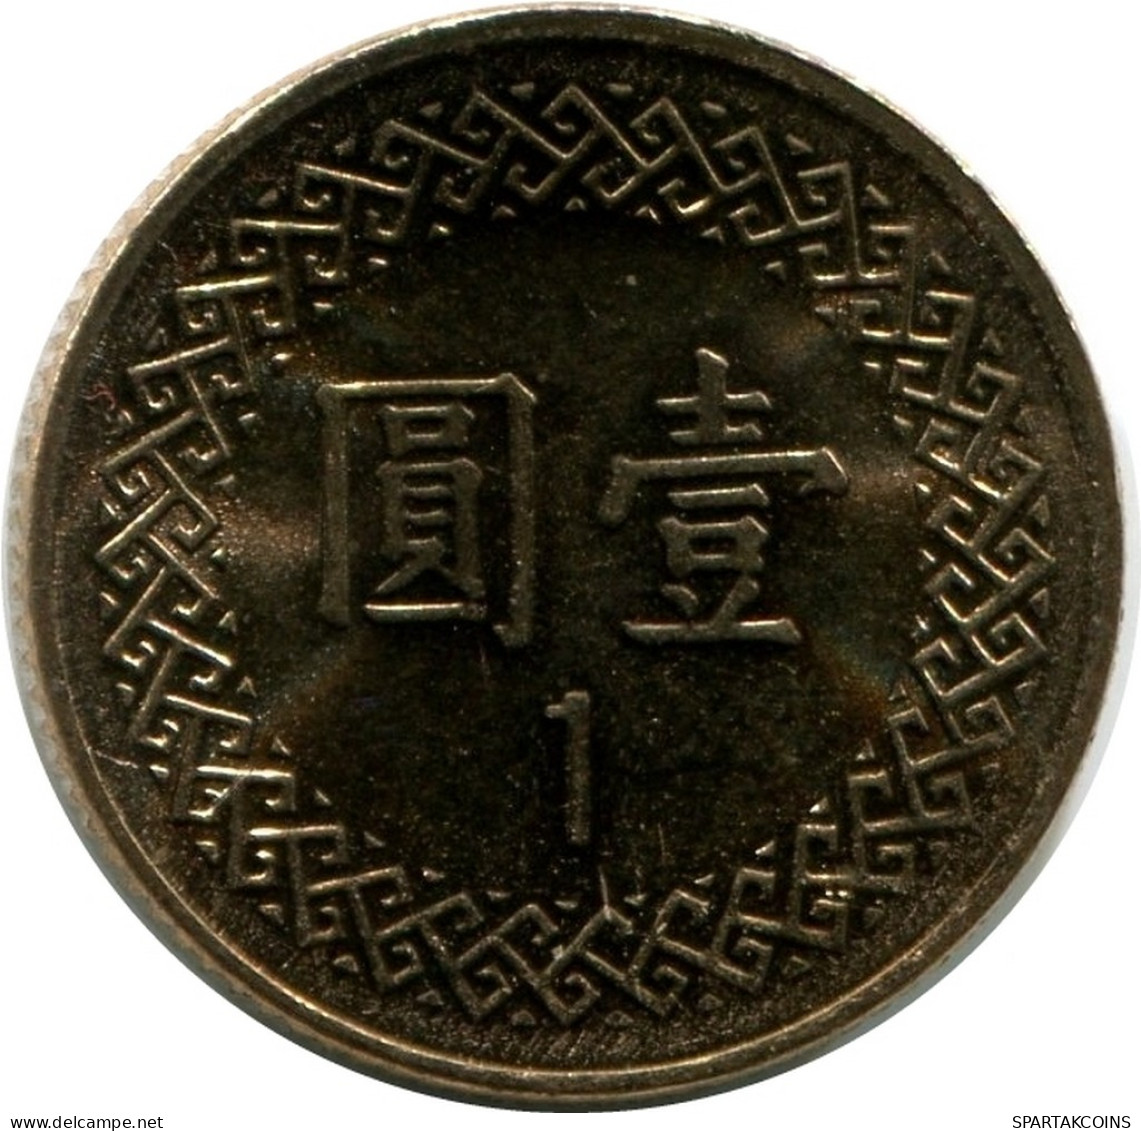 1 YUAN 1996 TAIWAN UNC Coin #M10414.U - Taiwán